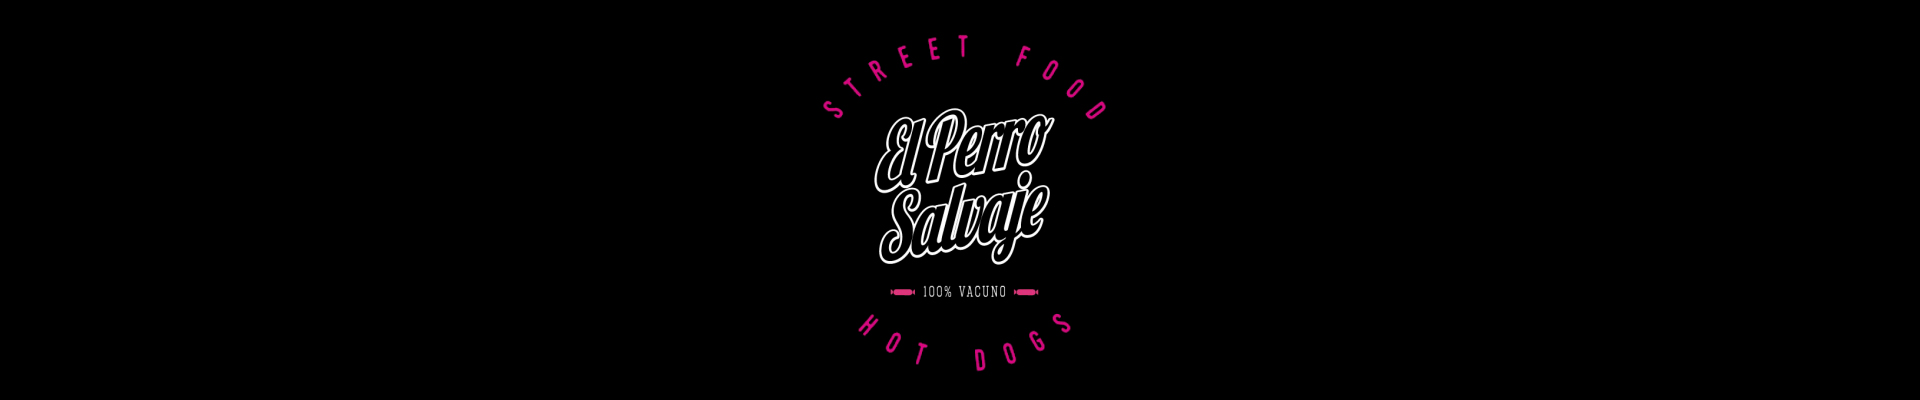 El Perro Salvaje (Street Food) - Hot Dogs 100% vacuno (Próximamente)